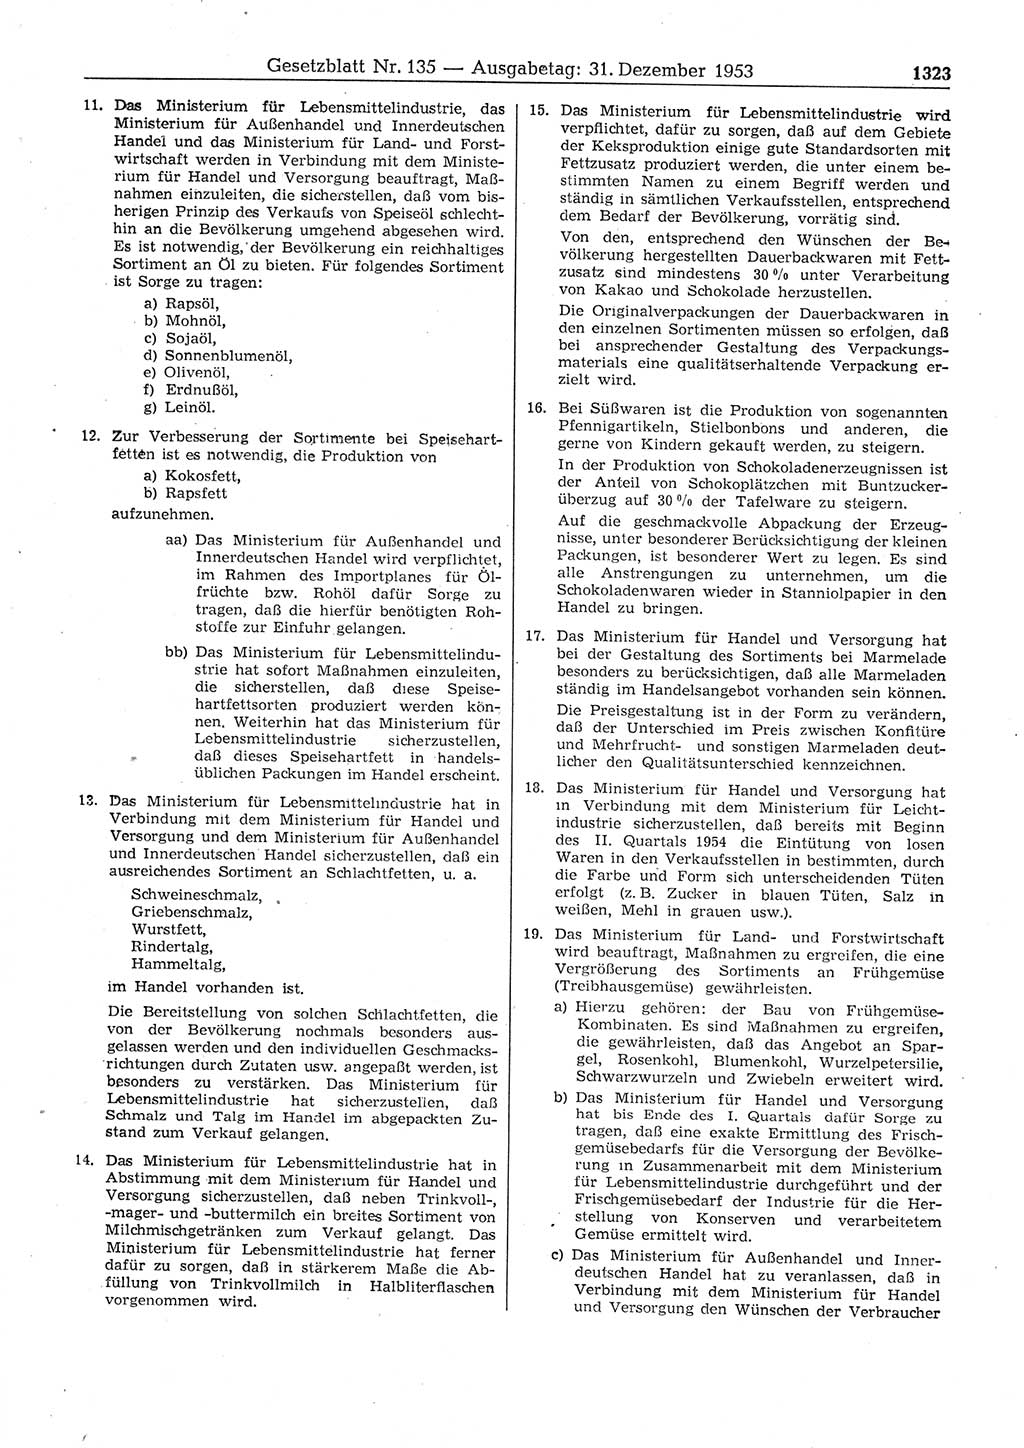 Gesetzblatt (GBl.) der Deutschen Demokratischen Republik (DDR) 1953, Seite 1323 (GBl. DDR 1953, S. 1323)